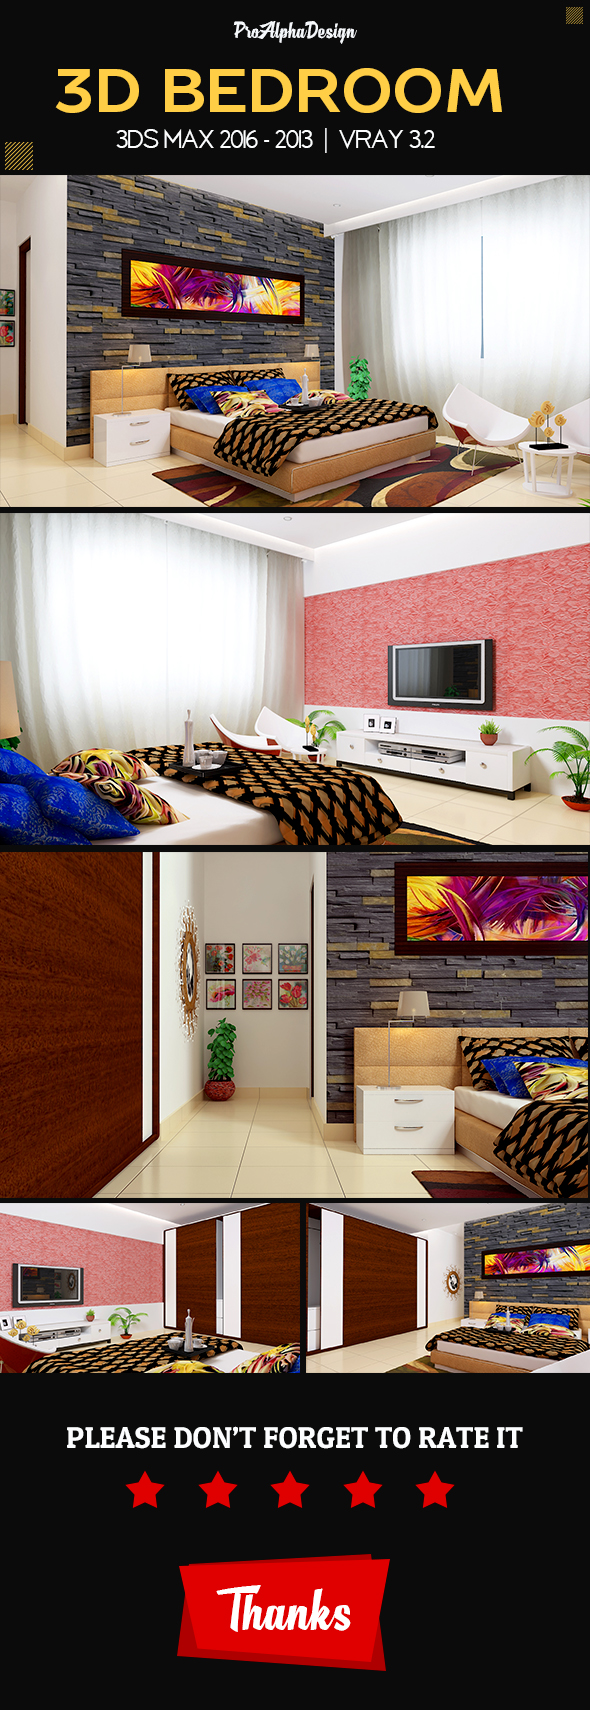 3D Bedroom Design - 3Docean 20448385